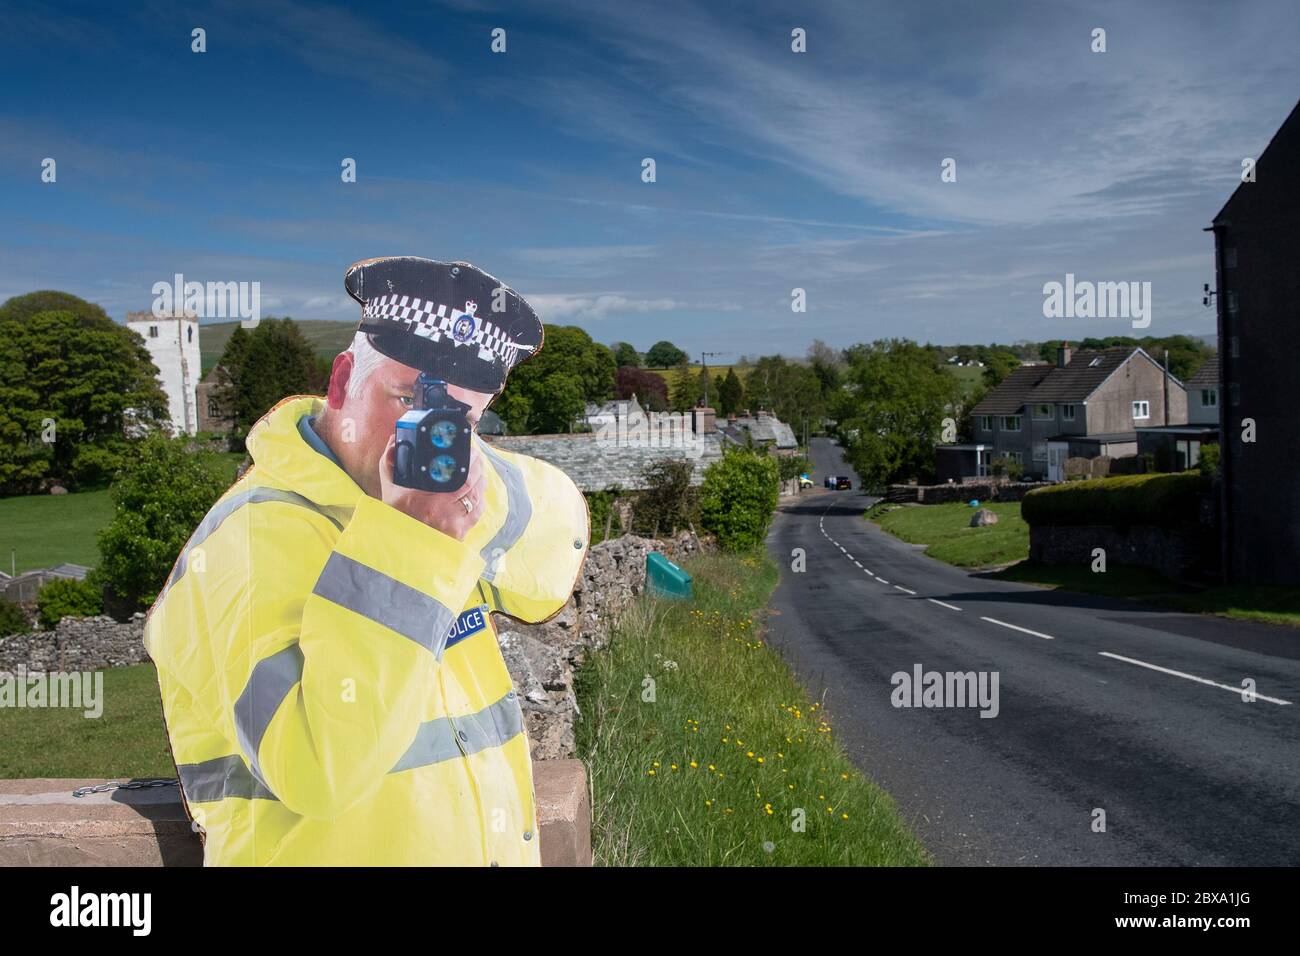 Karton Ausschnitt eines Polizisten mit einer Geschwindigkeitspistole, um den Verkehr auf dem Weg zu einem Dorf zu verlangsamen. Cumbria, Großbritannien. Stockfoto